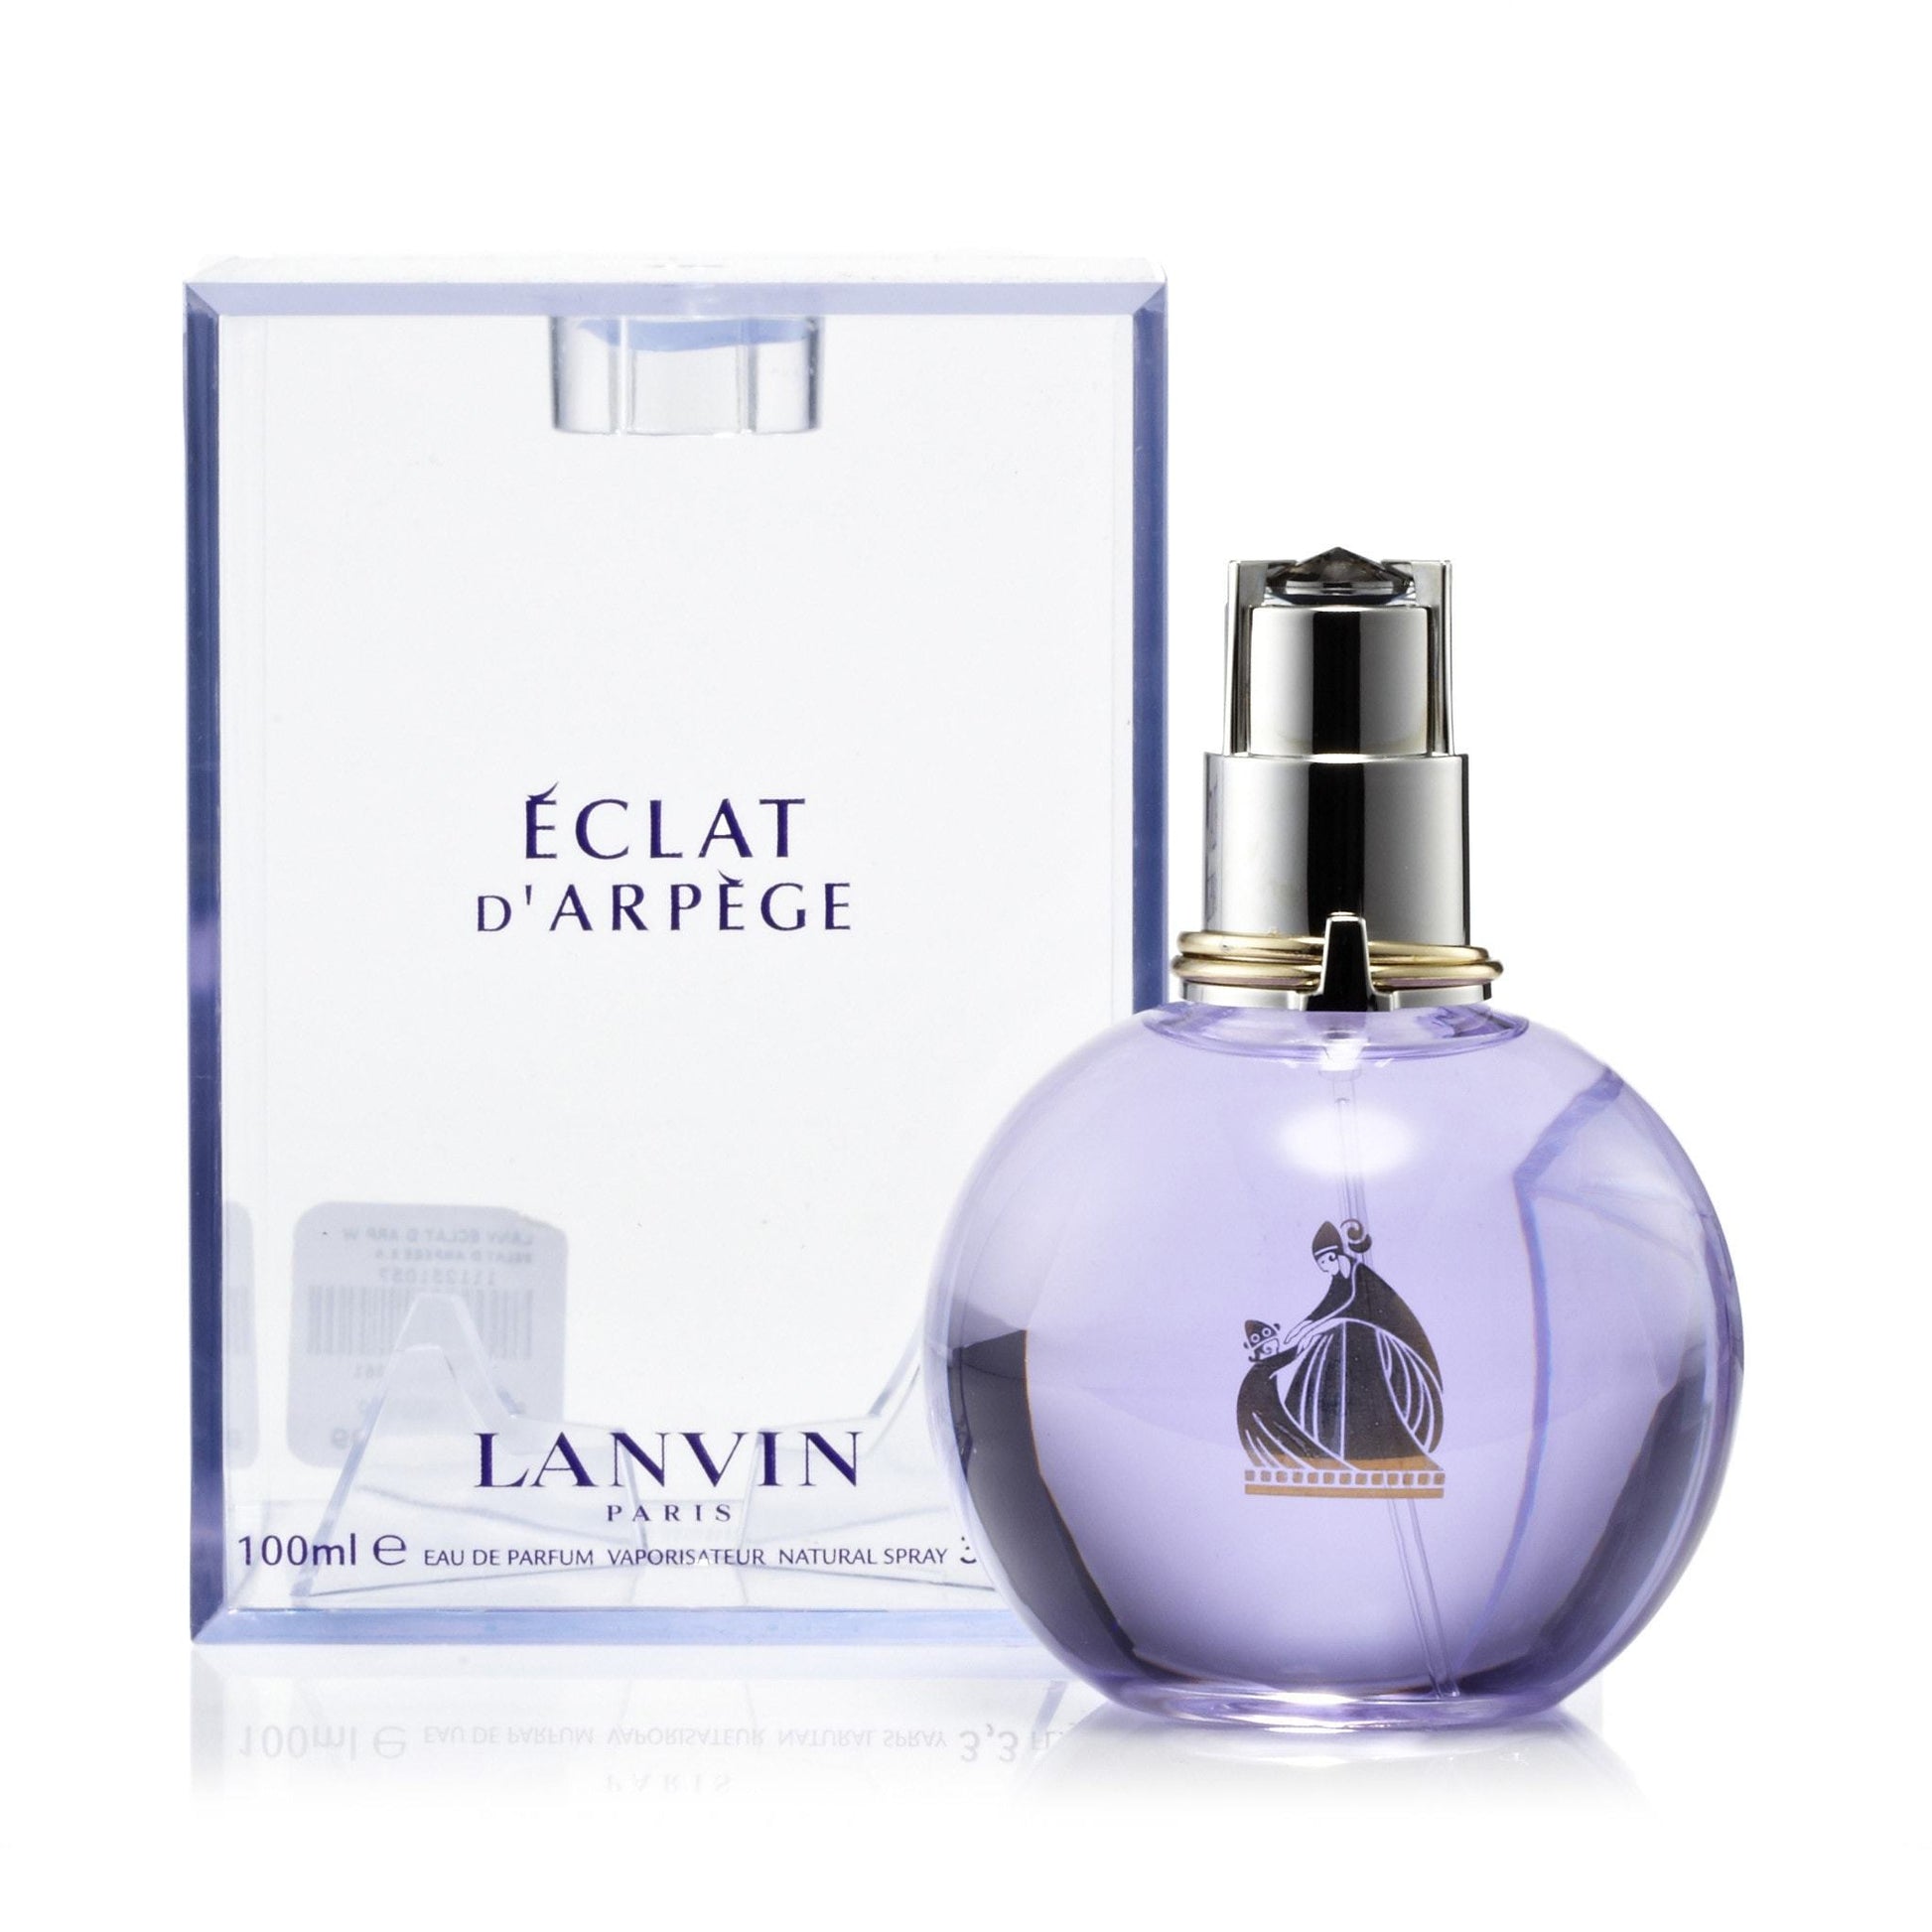 Pack of (2) New LANVIN Eclat d'Arpege Eau de Parfum